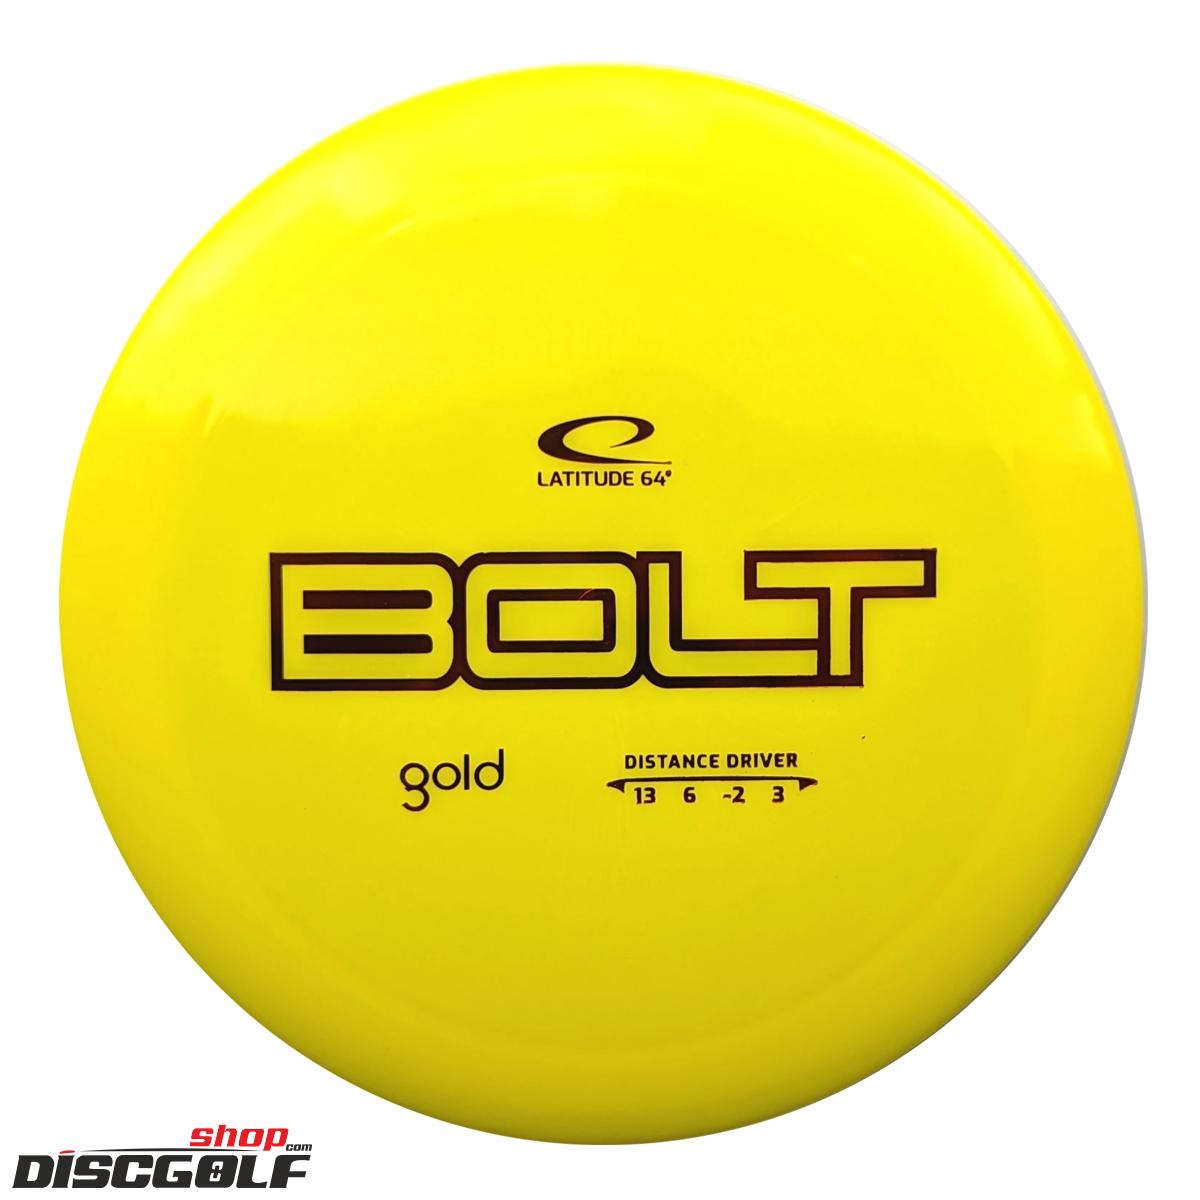 Latitude 64º Bolt Gold (discgolf)